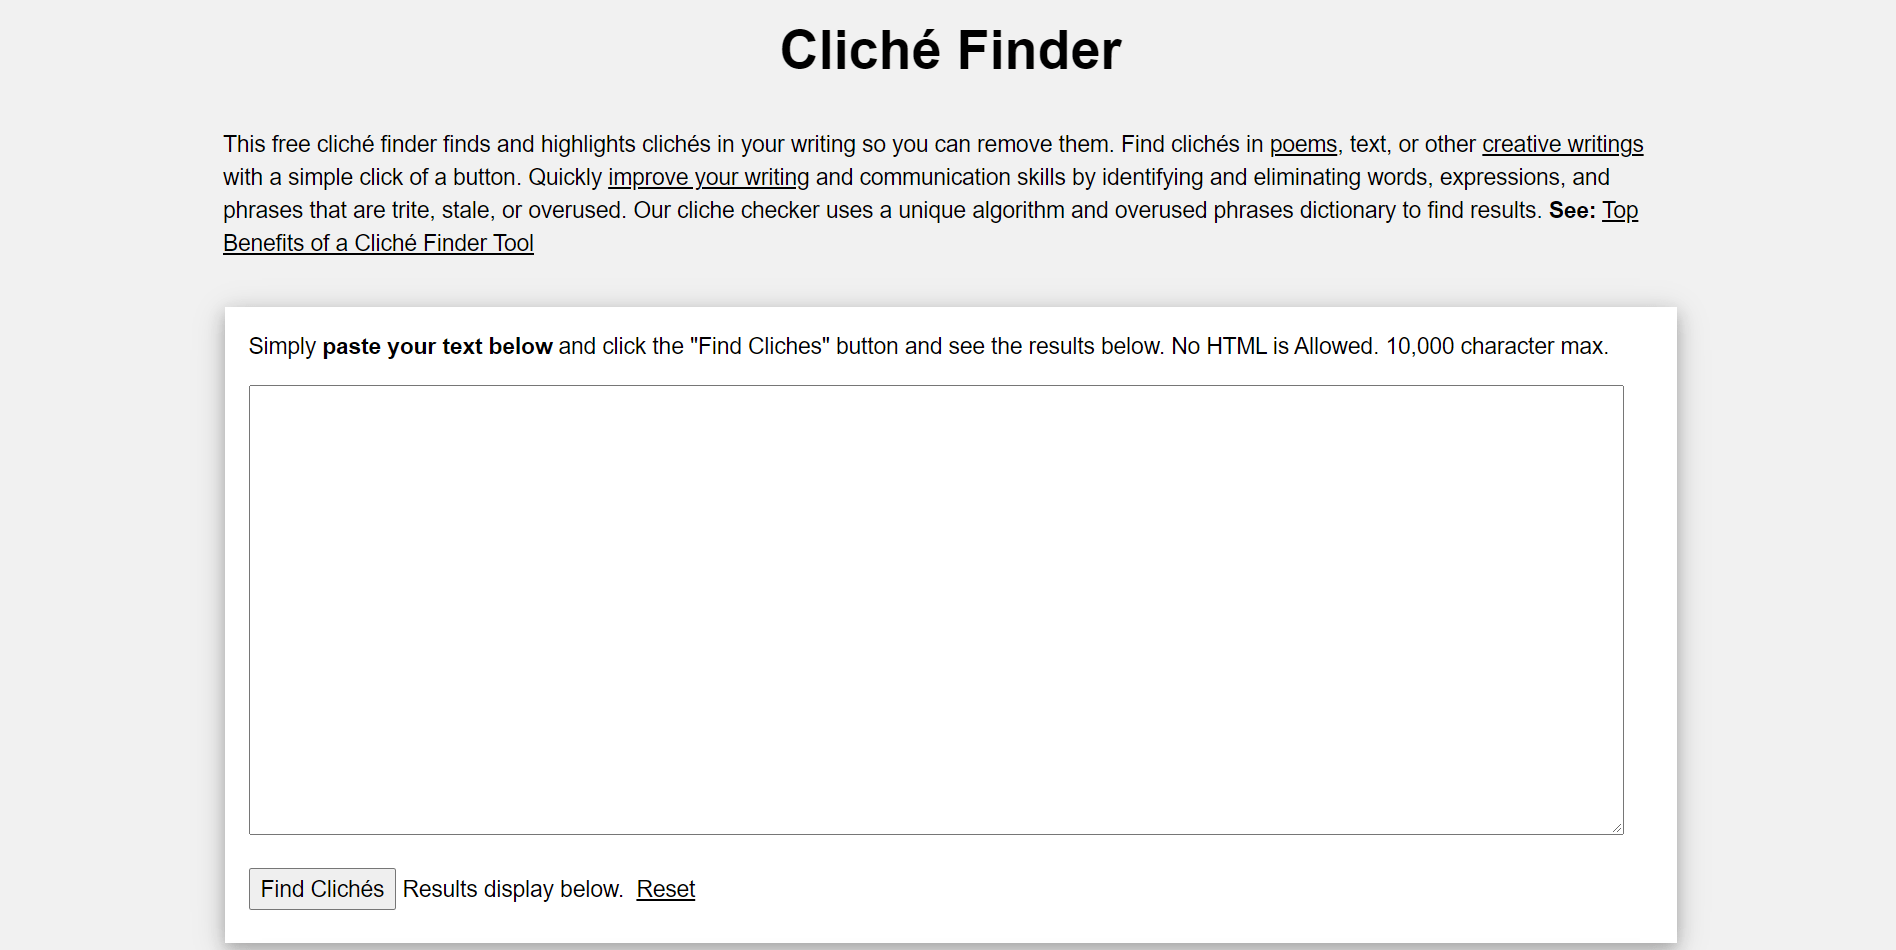 Cliche Finder